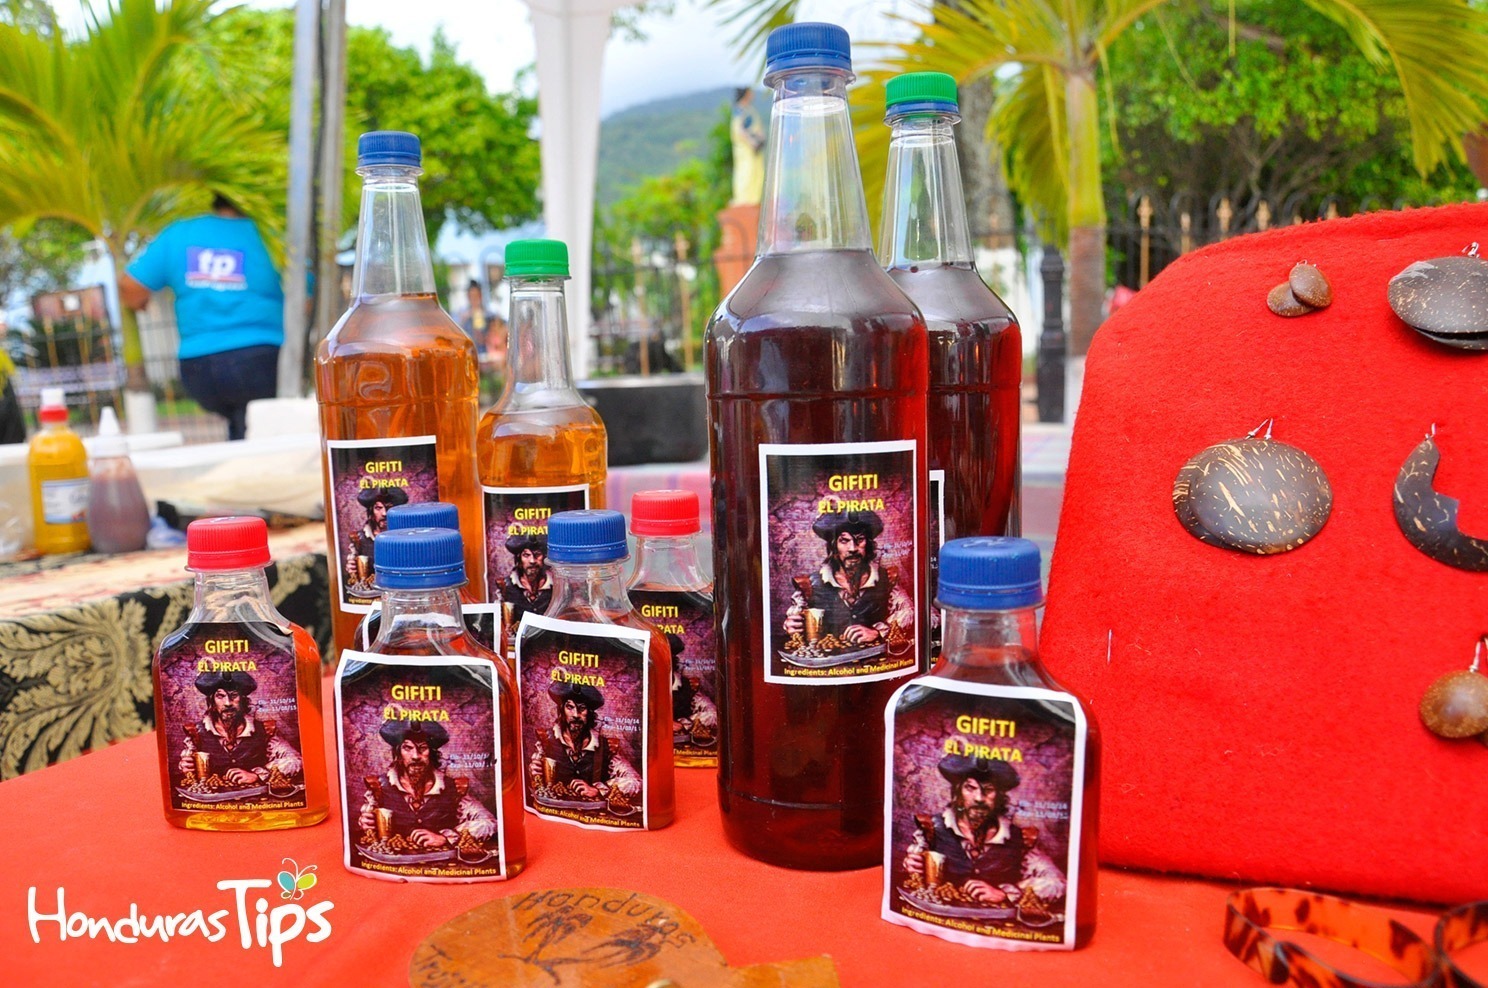 La tradicional bebida garífuna no pudo faltar en las exposiciones alrededor del parque Colón. Aquí la marca Gifiti Pirata.